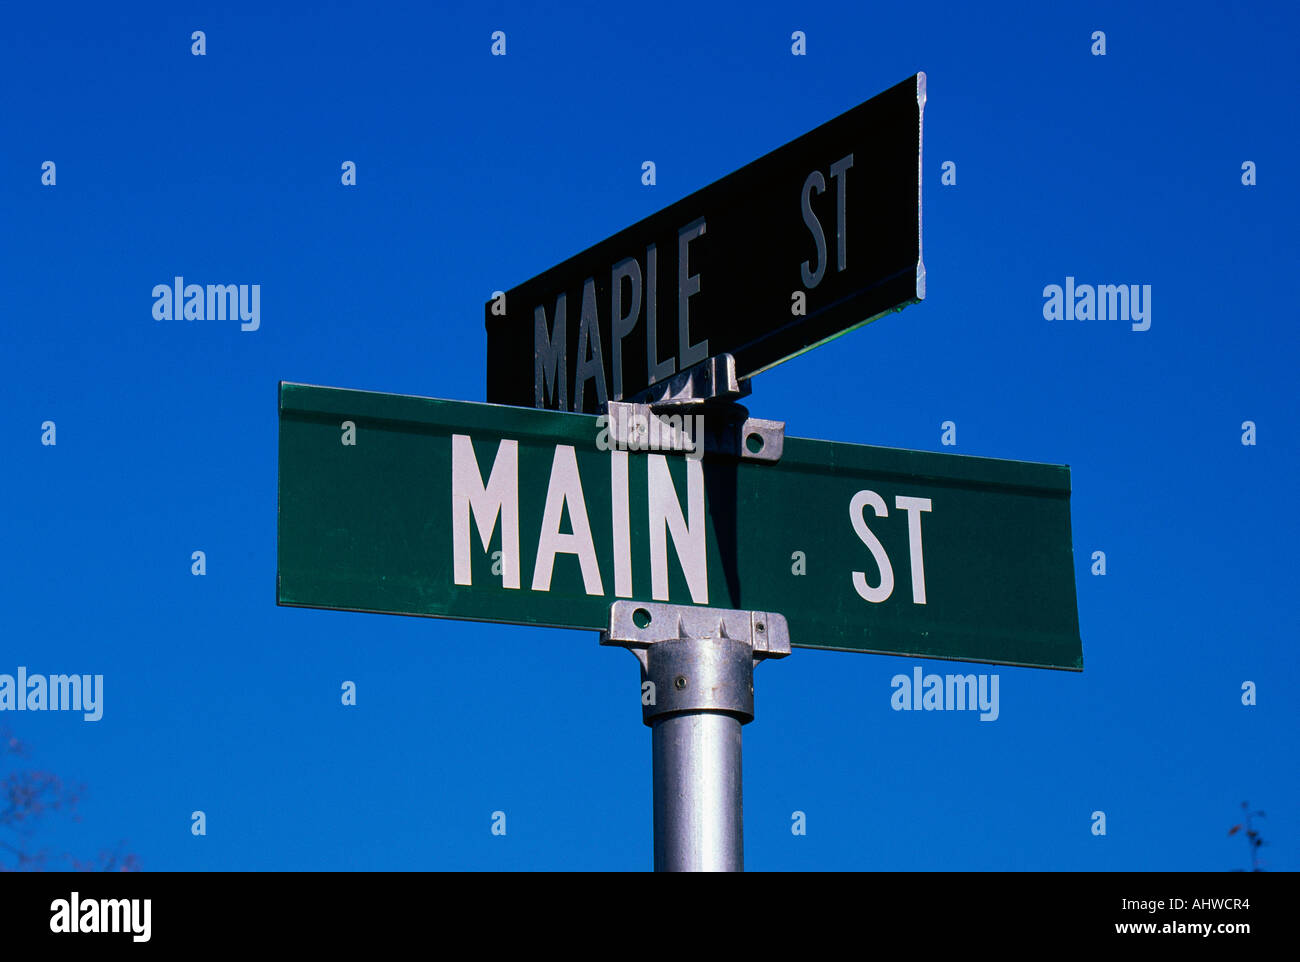 Dies ist ein Straßenschild Kennzeichnung der Ecke Main Street Maple Street, die Zeichen grün mit weißem Schriftzug vor blauem Himmel Stockfoto